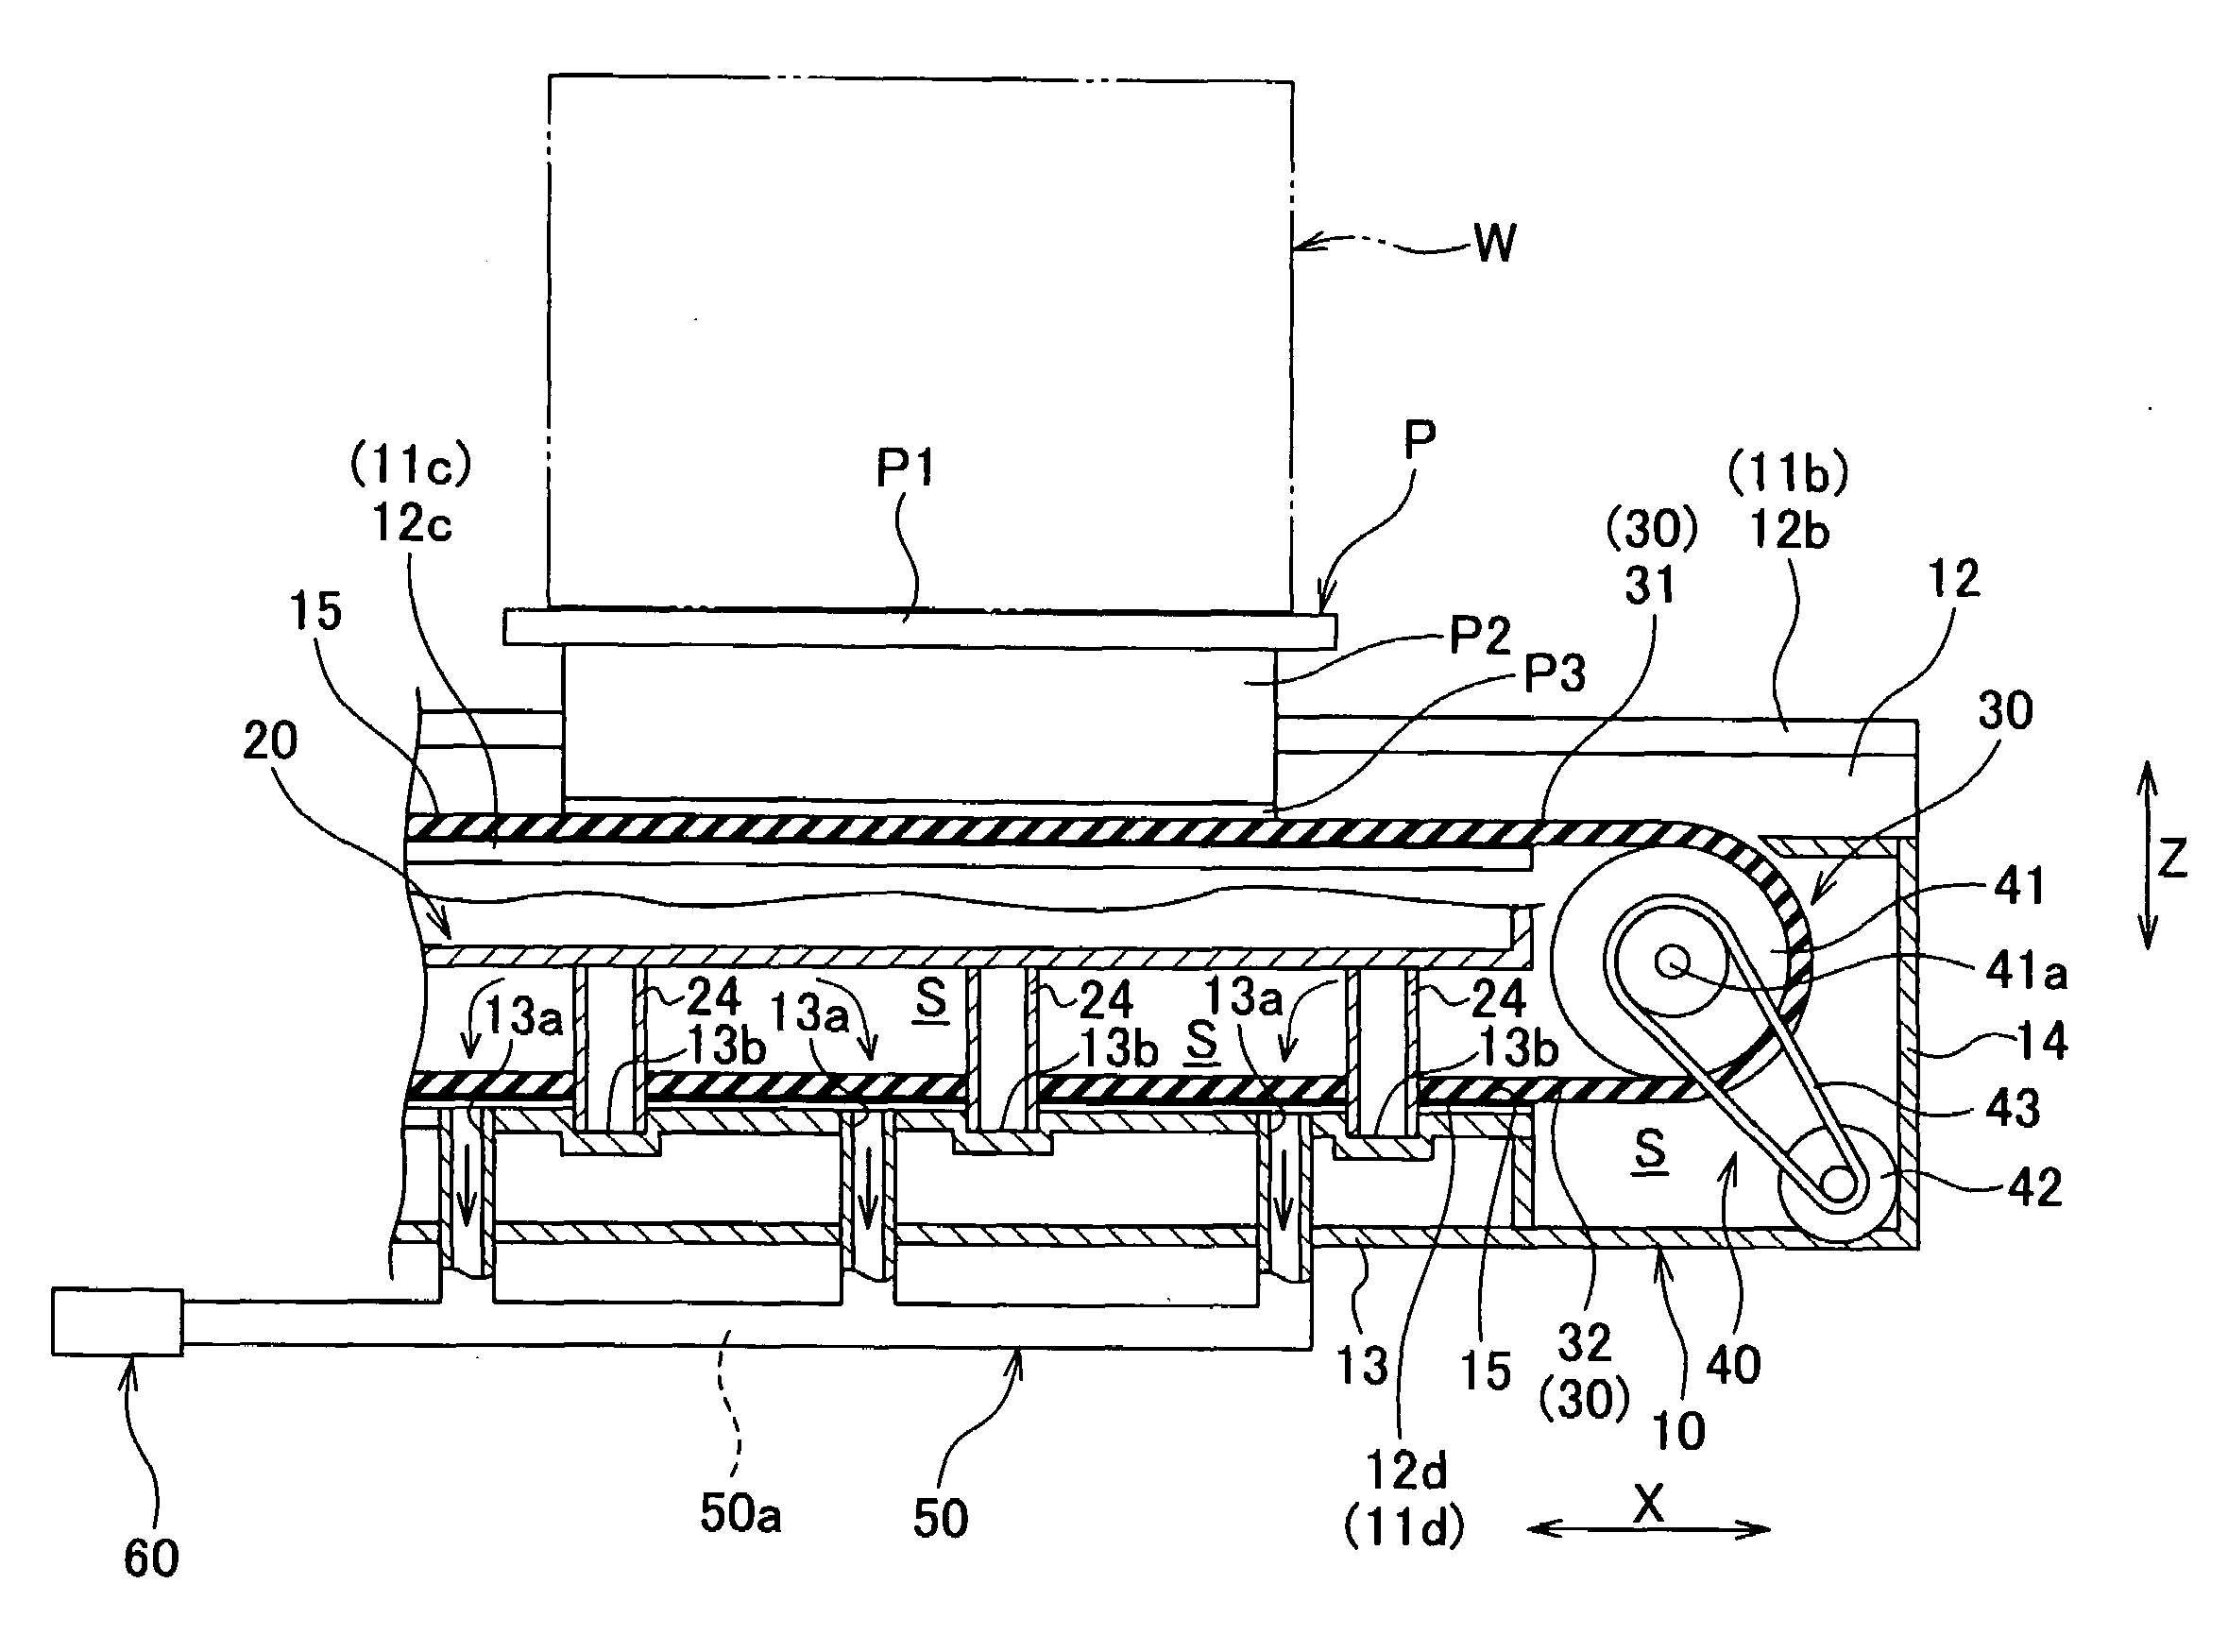 Conveyer apparatus